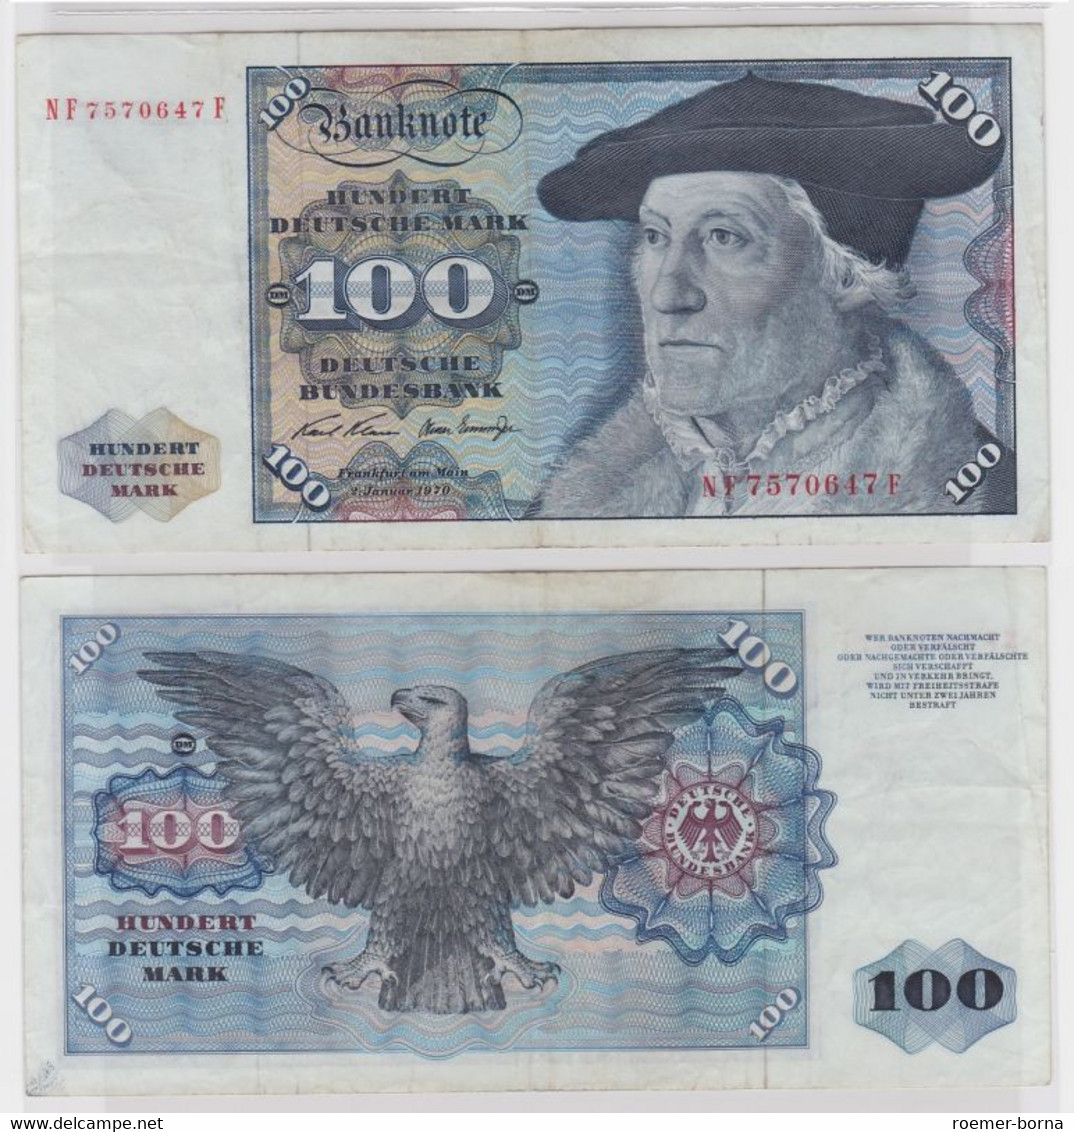 T146310 Banknote 100 DM Deutsche Mark Ro. 273b Schein 2.Jan 1970 KN NF 7570647 F - 100 DM